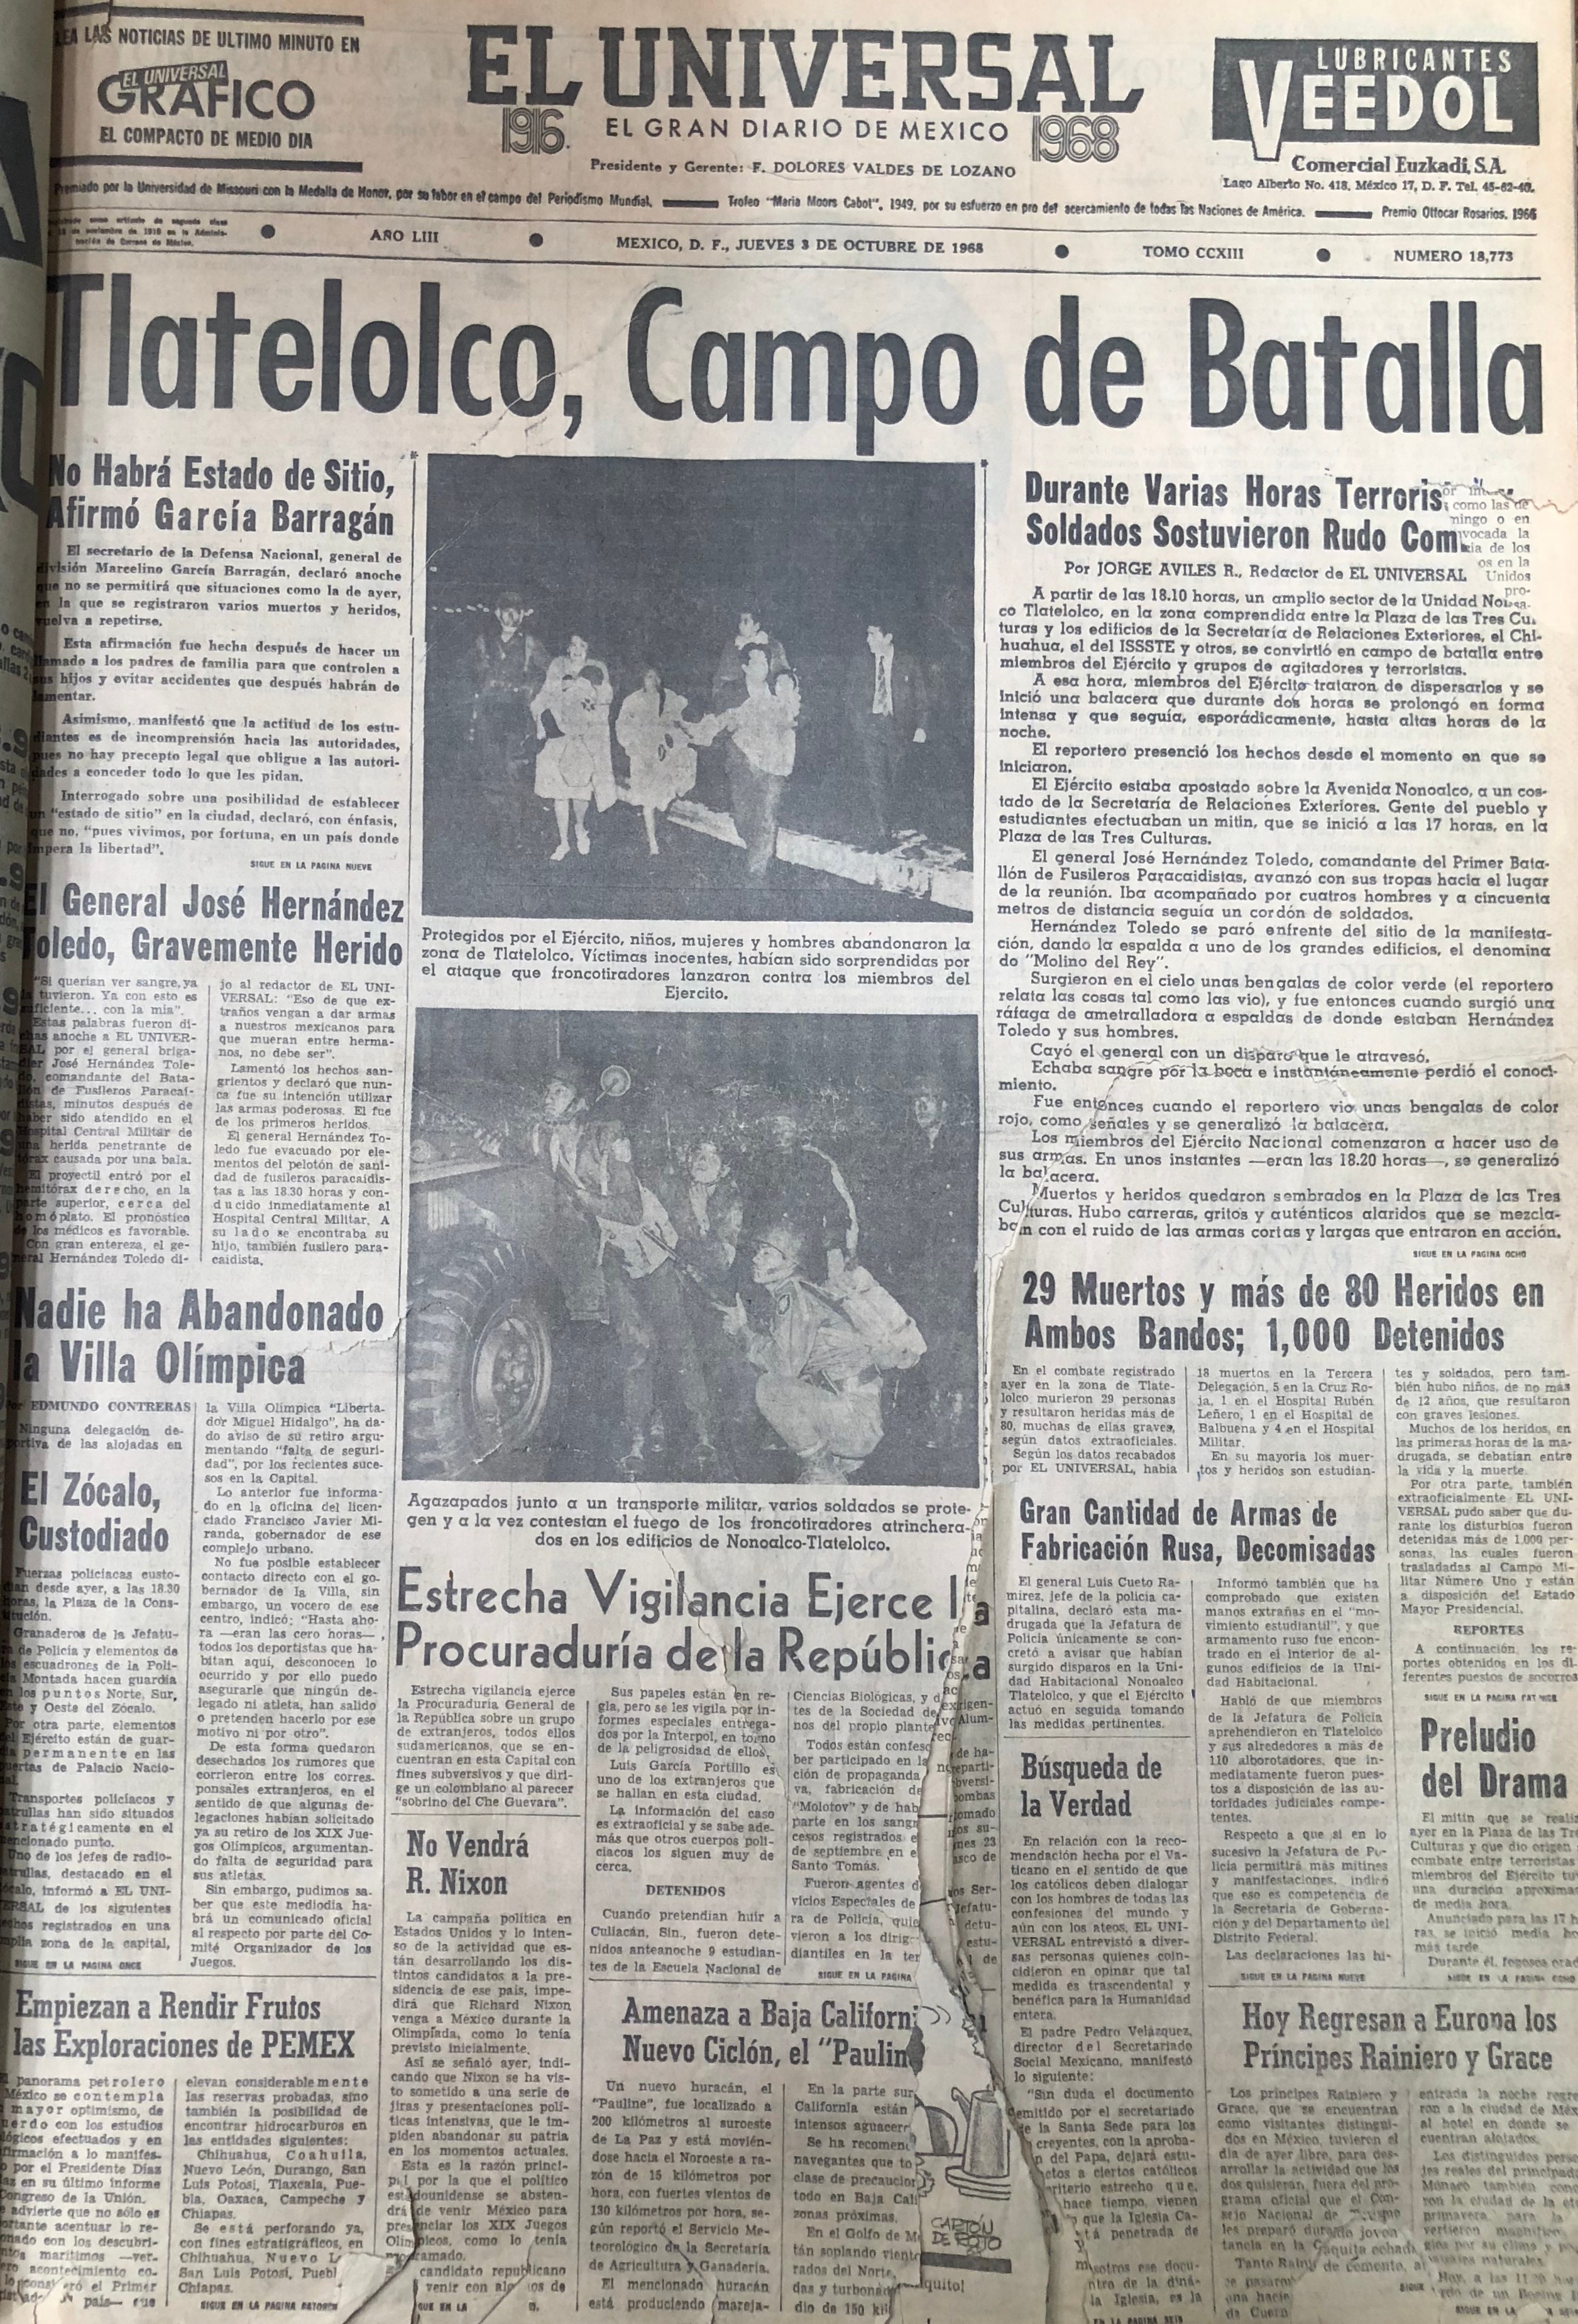 Portadas de periódicos después del 2 de octubre de 1968 ¿Qué dijeron?